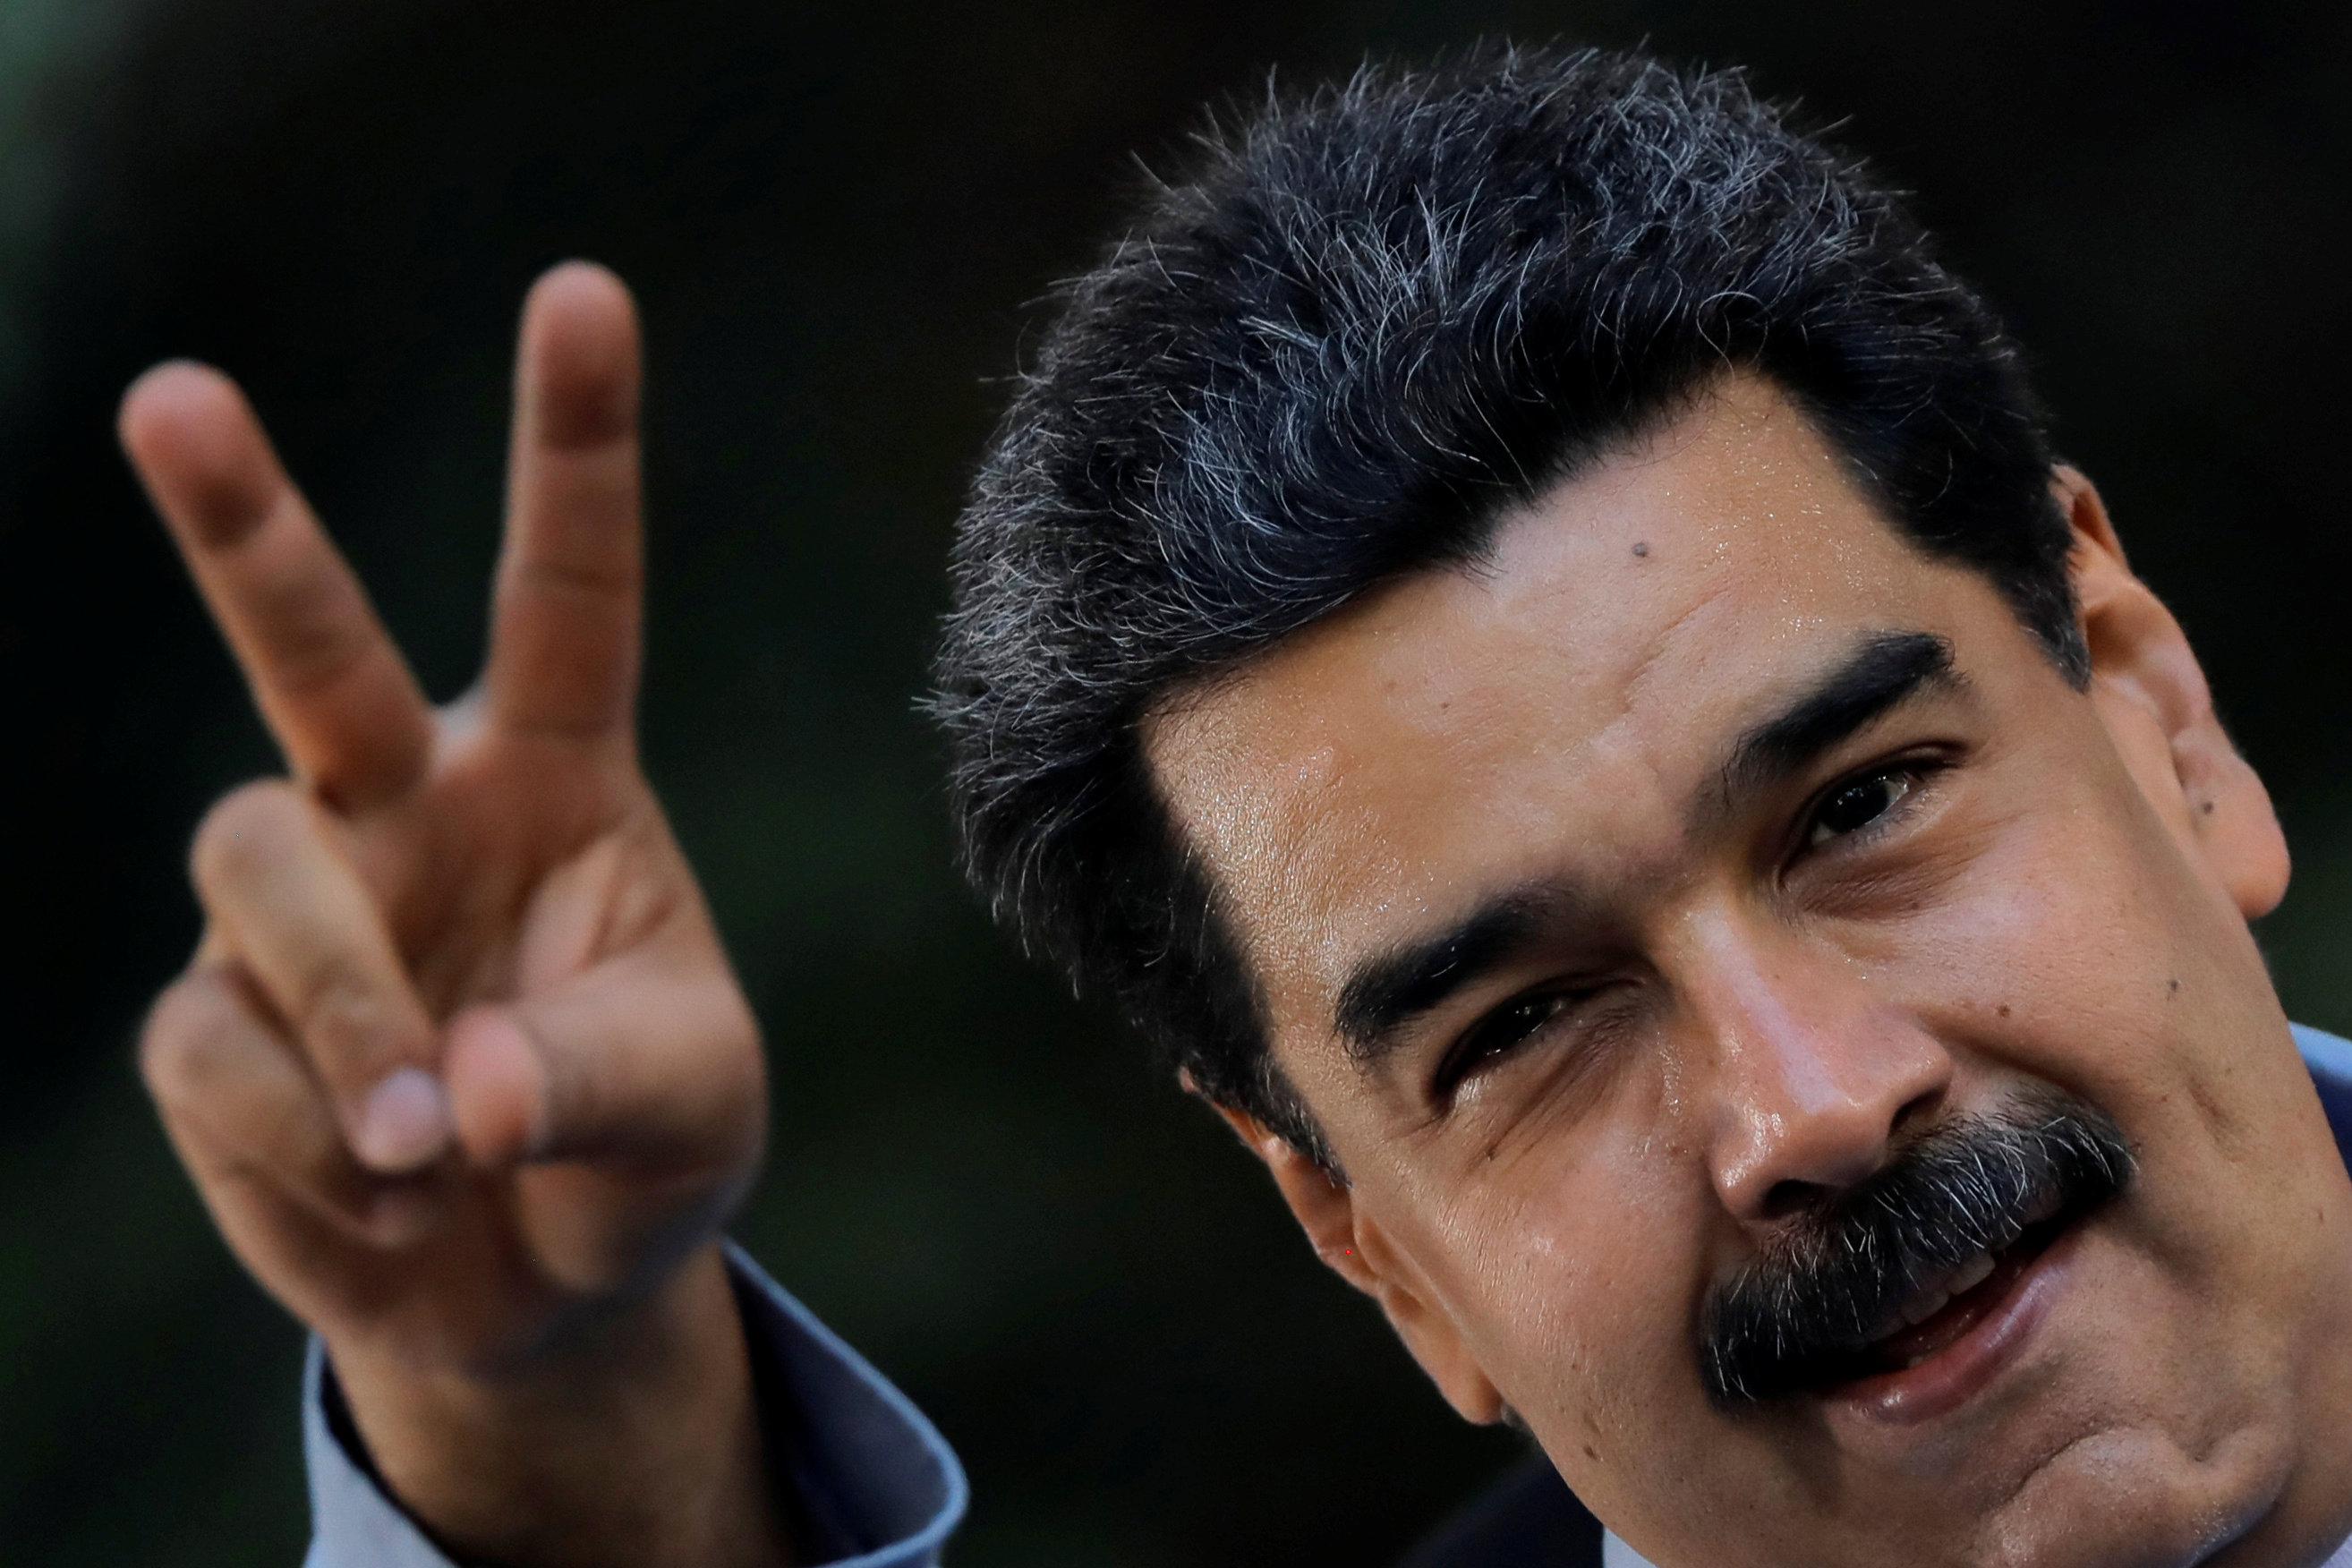 El Mundo: La tibieza de la UE con Maduro que denuncia Duque perpetúa el régimen